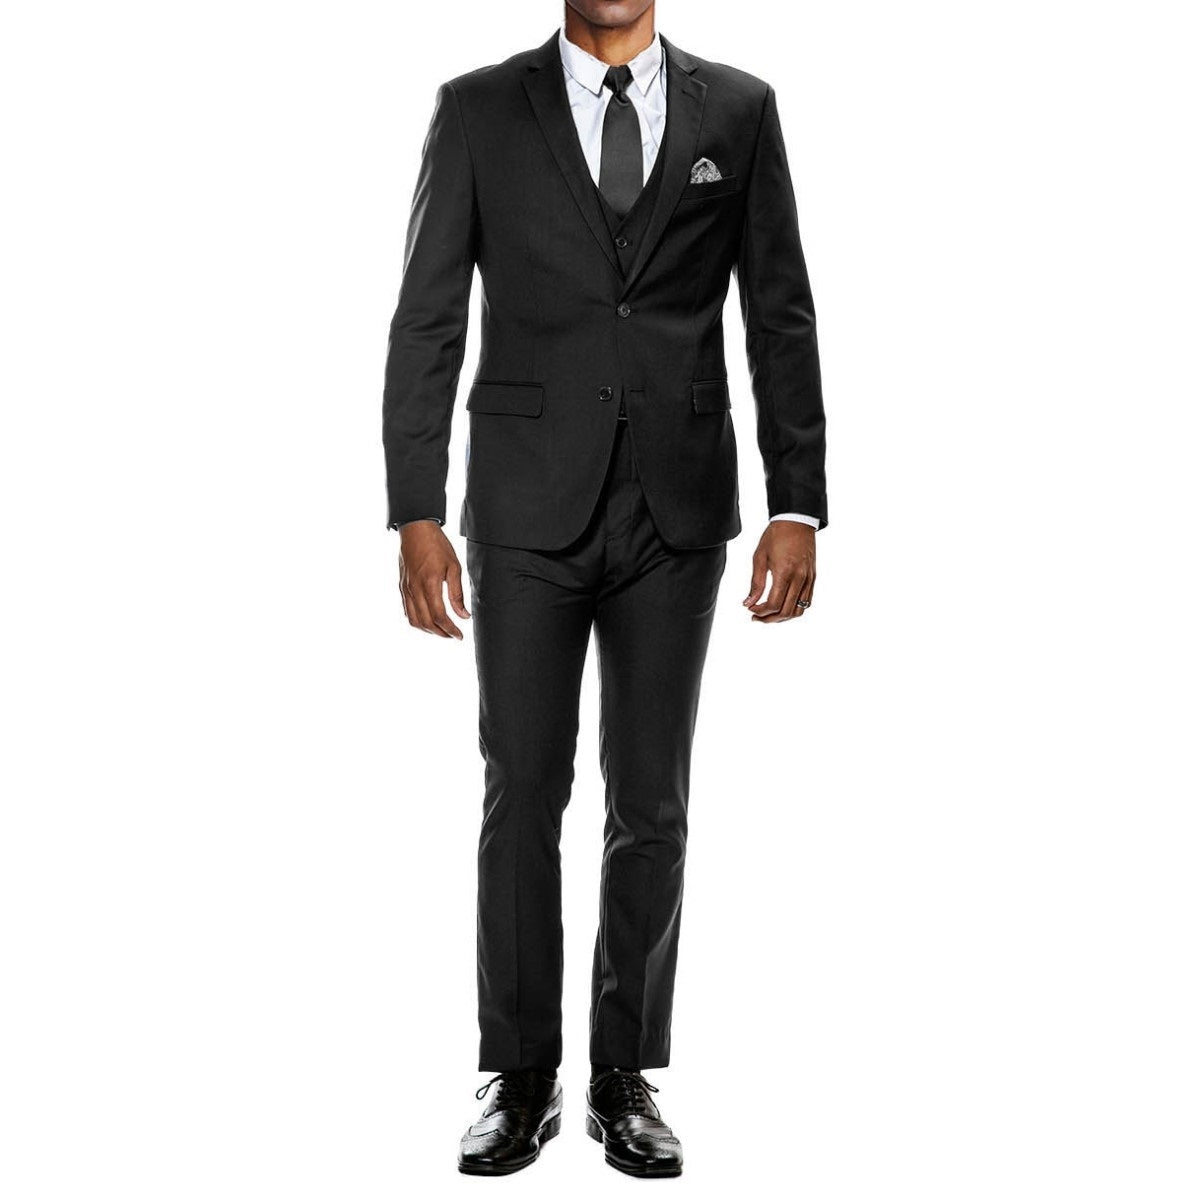 Traje Formal para Hombre TA-M282SK-01 - Formal Suit for Men